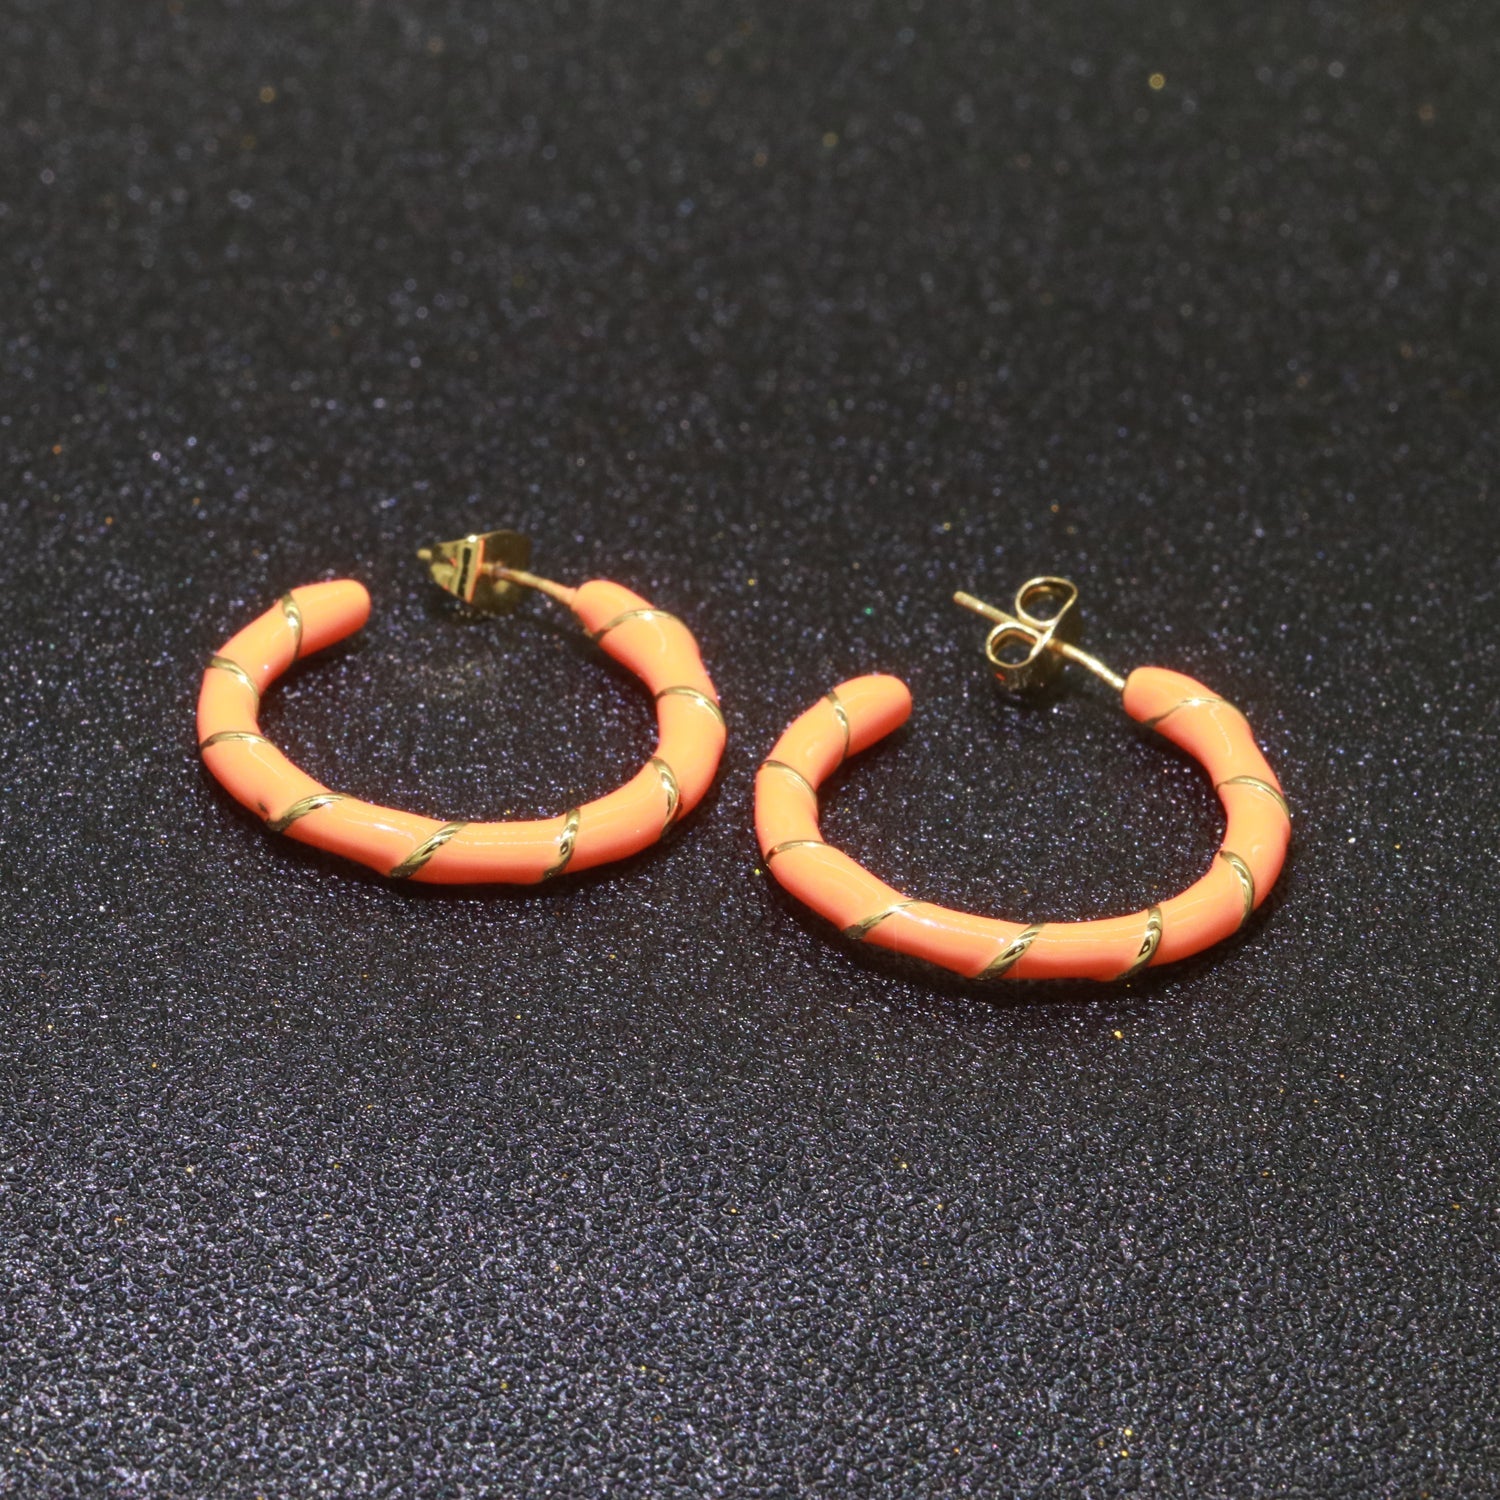 Orange Enamel Hoop Earring with Gold Swirl 26mm Hoop earring Jewelry Gift - DLUXCA